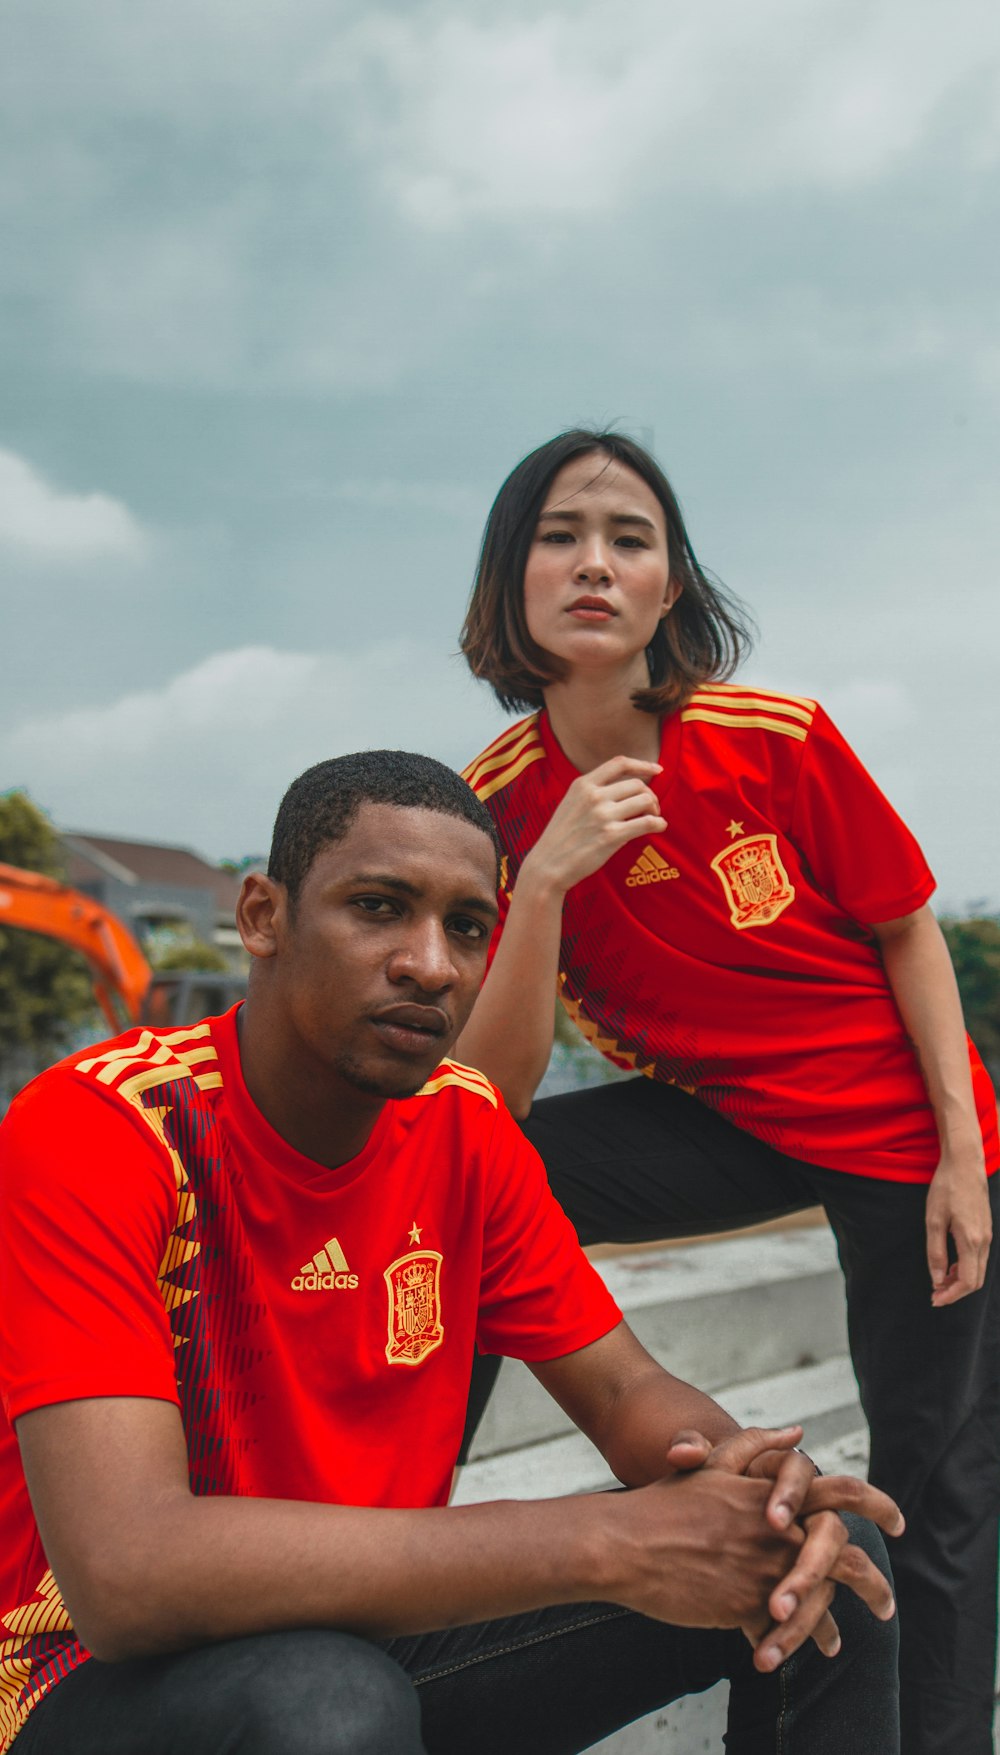 Foto Mujer con camiseta roja y junto a hombre con camiseta adidas roja y amarilla – Imagen #football en Unsplash